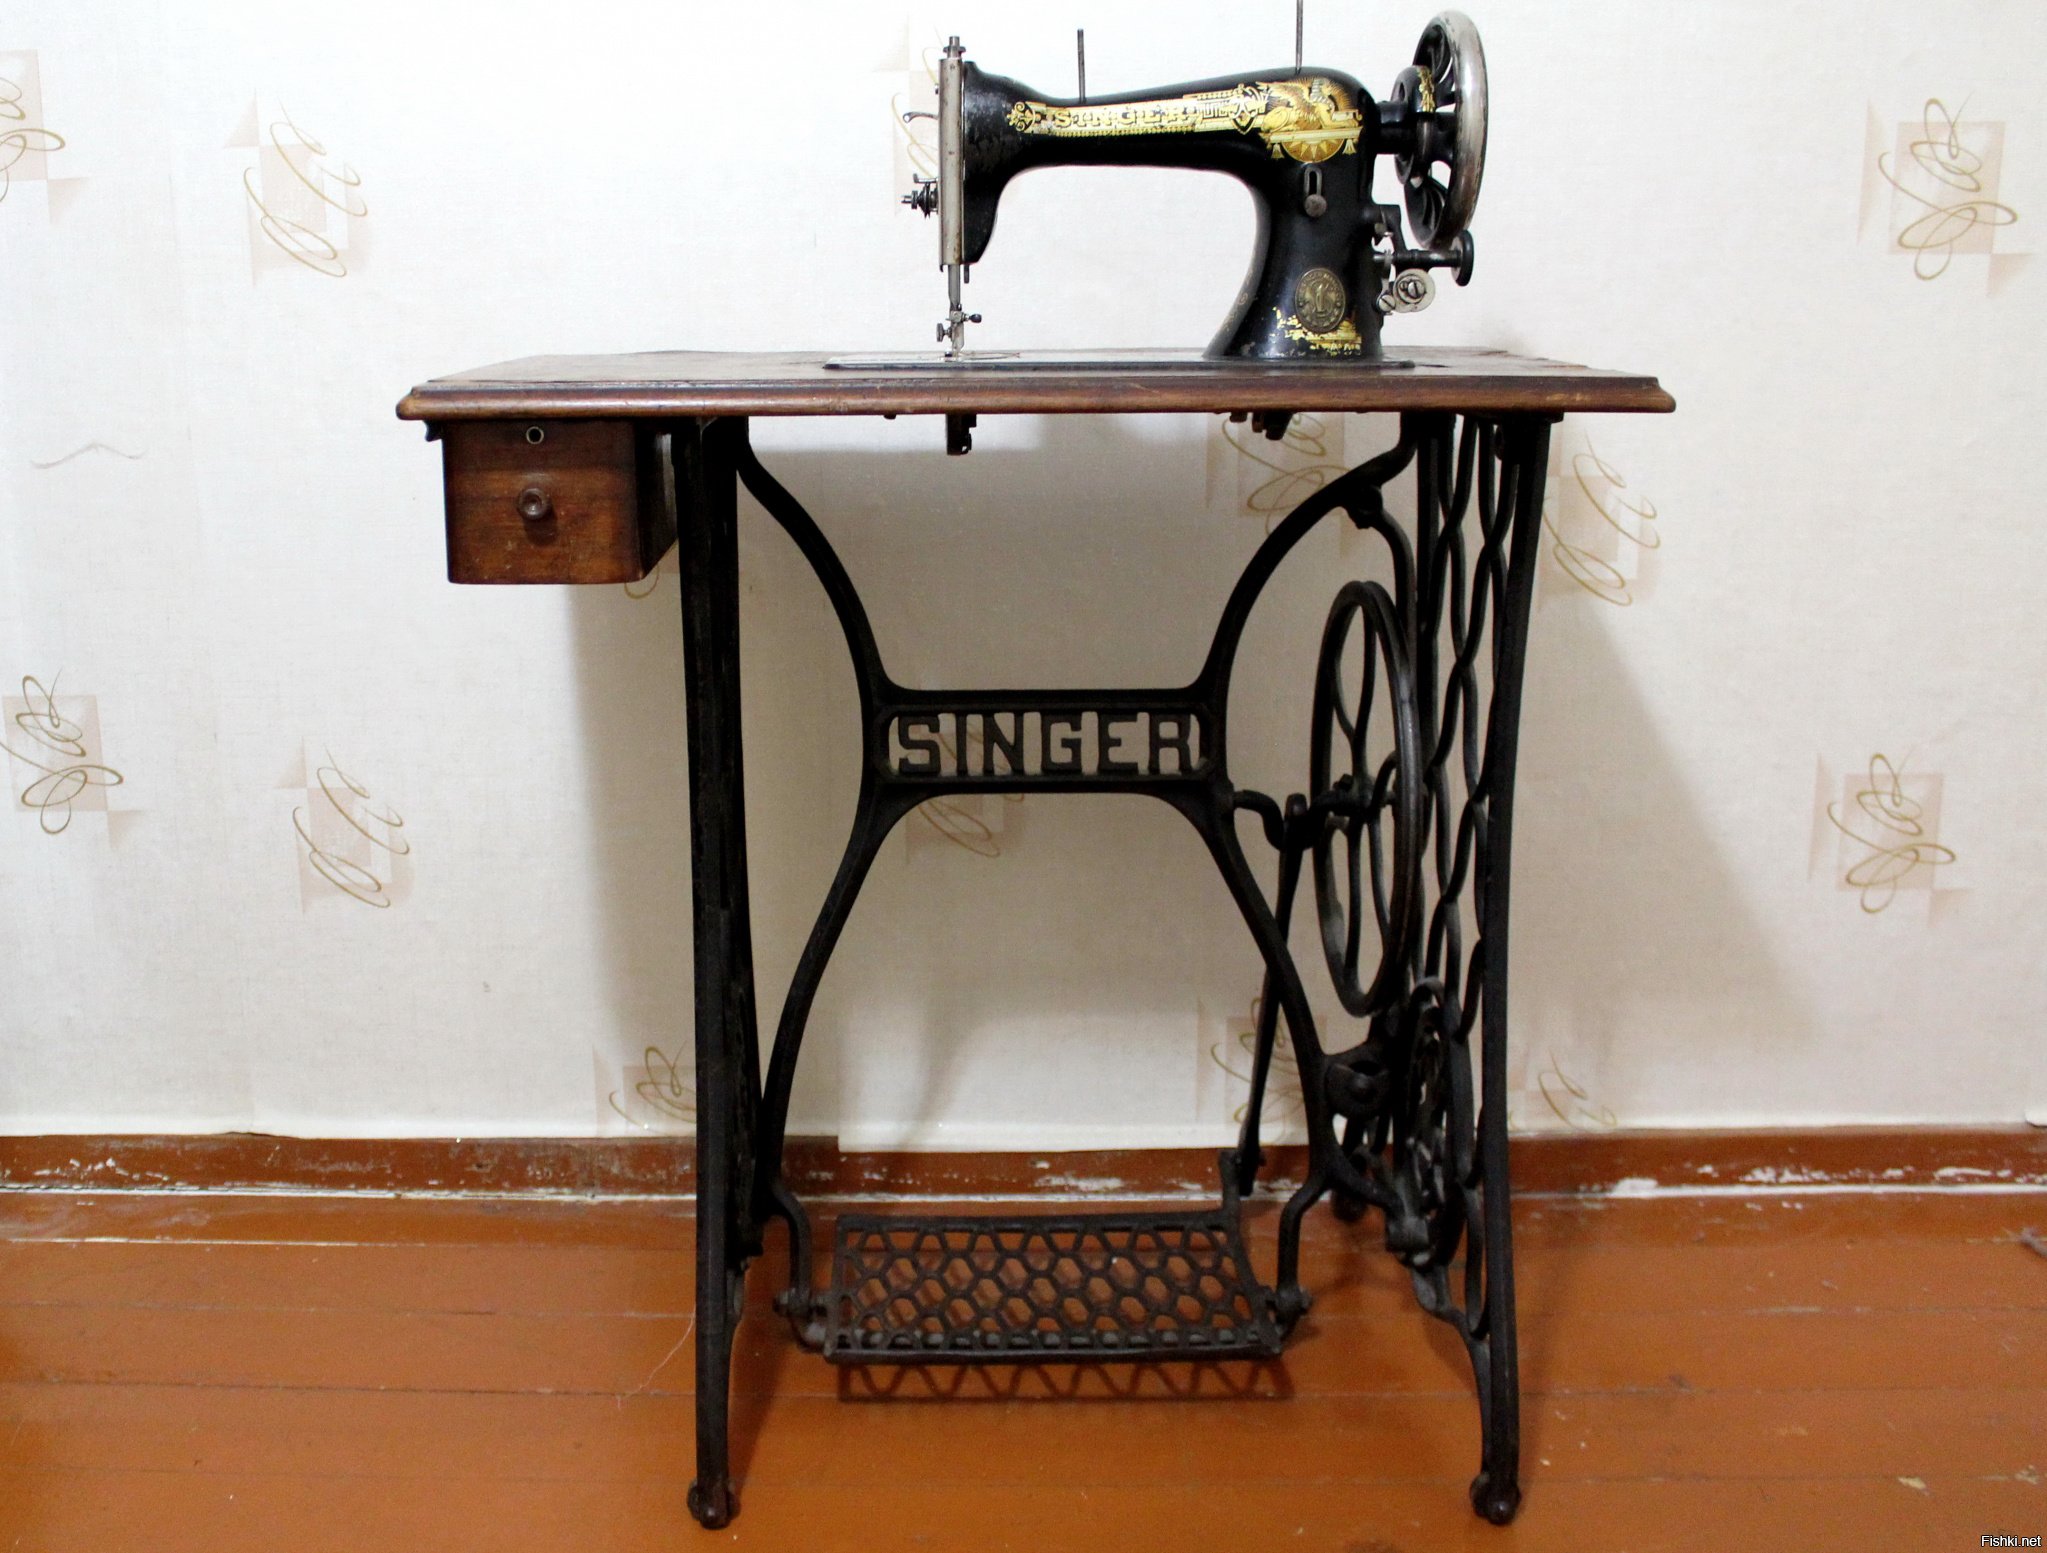 Купить ножную машинку зингер. Швейная машинка (Zinger super 2001). Швейная машинка Зингер 1950 г. Zinger швейная машинка ножная. Машинка Зингер 2 швейная.